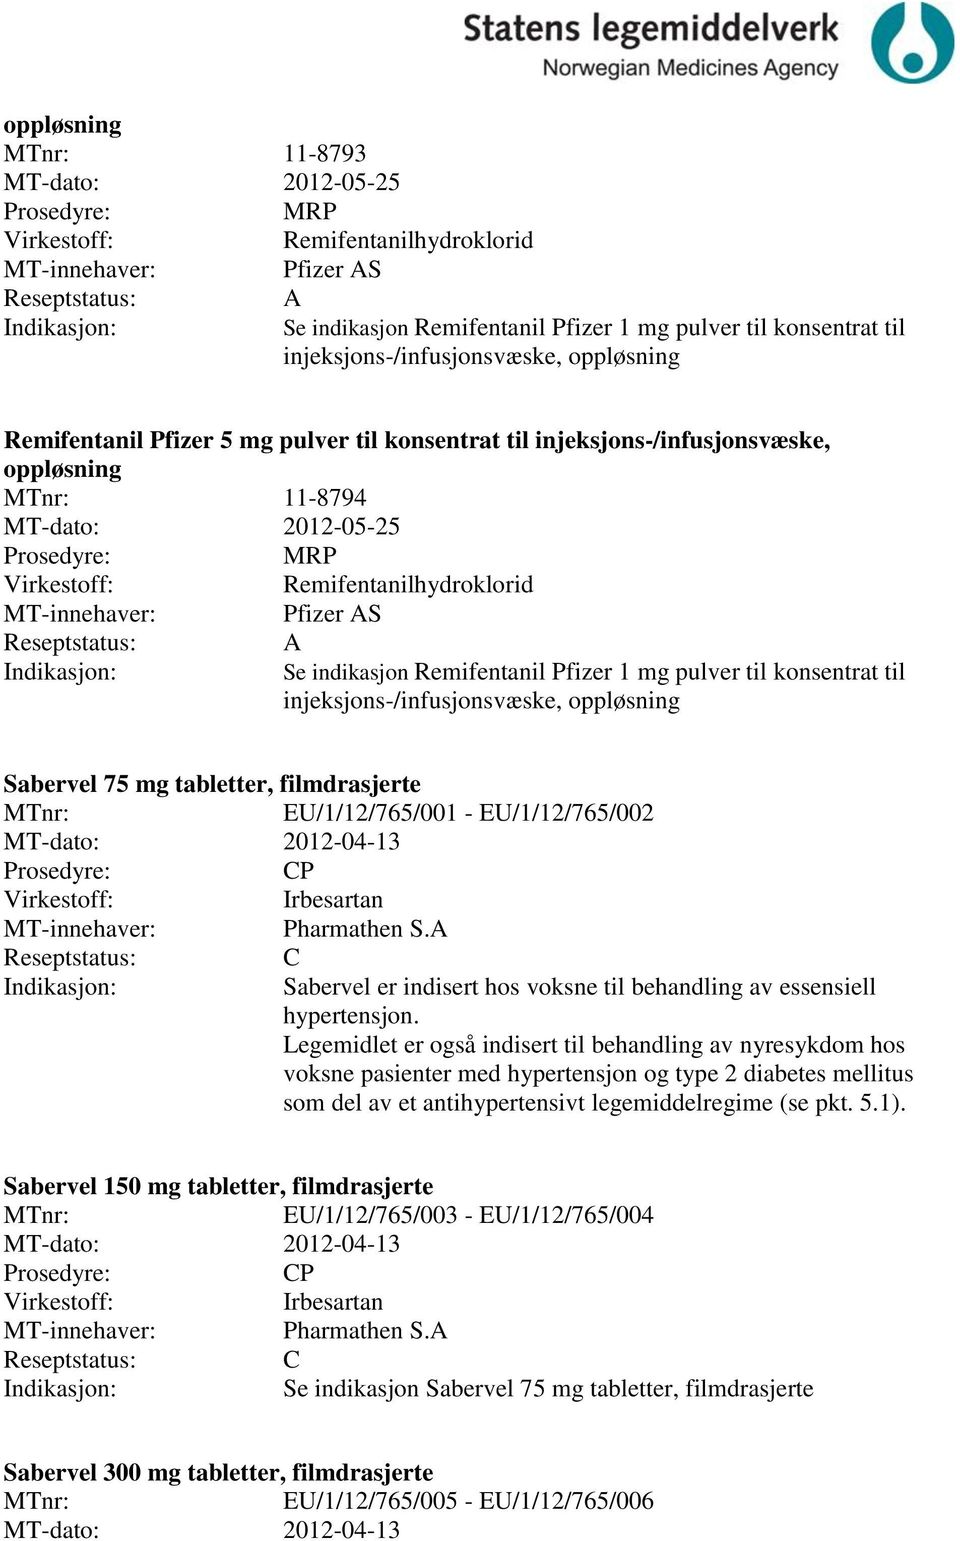 injeksjons-/infusjonsvæske, oppløsning Sabervel 75 mg tabletter, filmdrasjerte EU/1/12/765/001 - EU/1/12/765/002 MT-dato: 2012-04-13 P Irbesartan Pharmathen S.